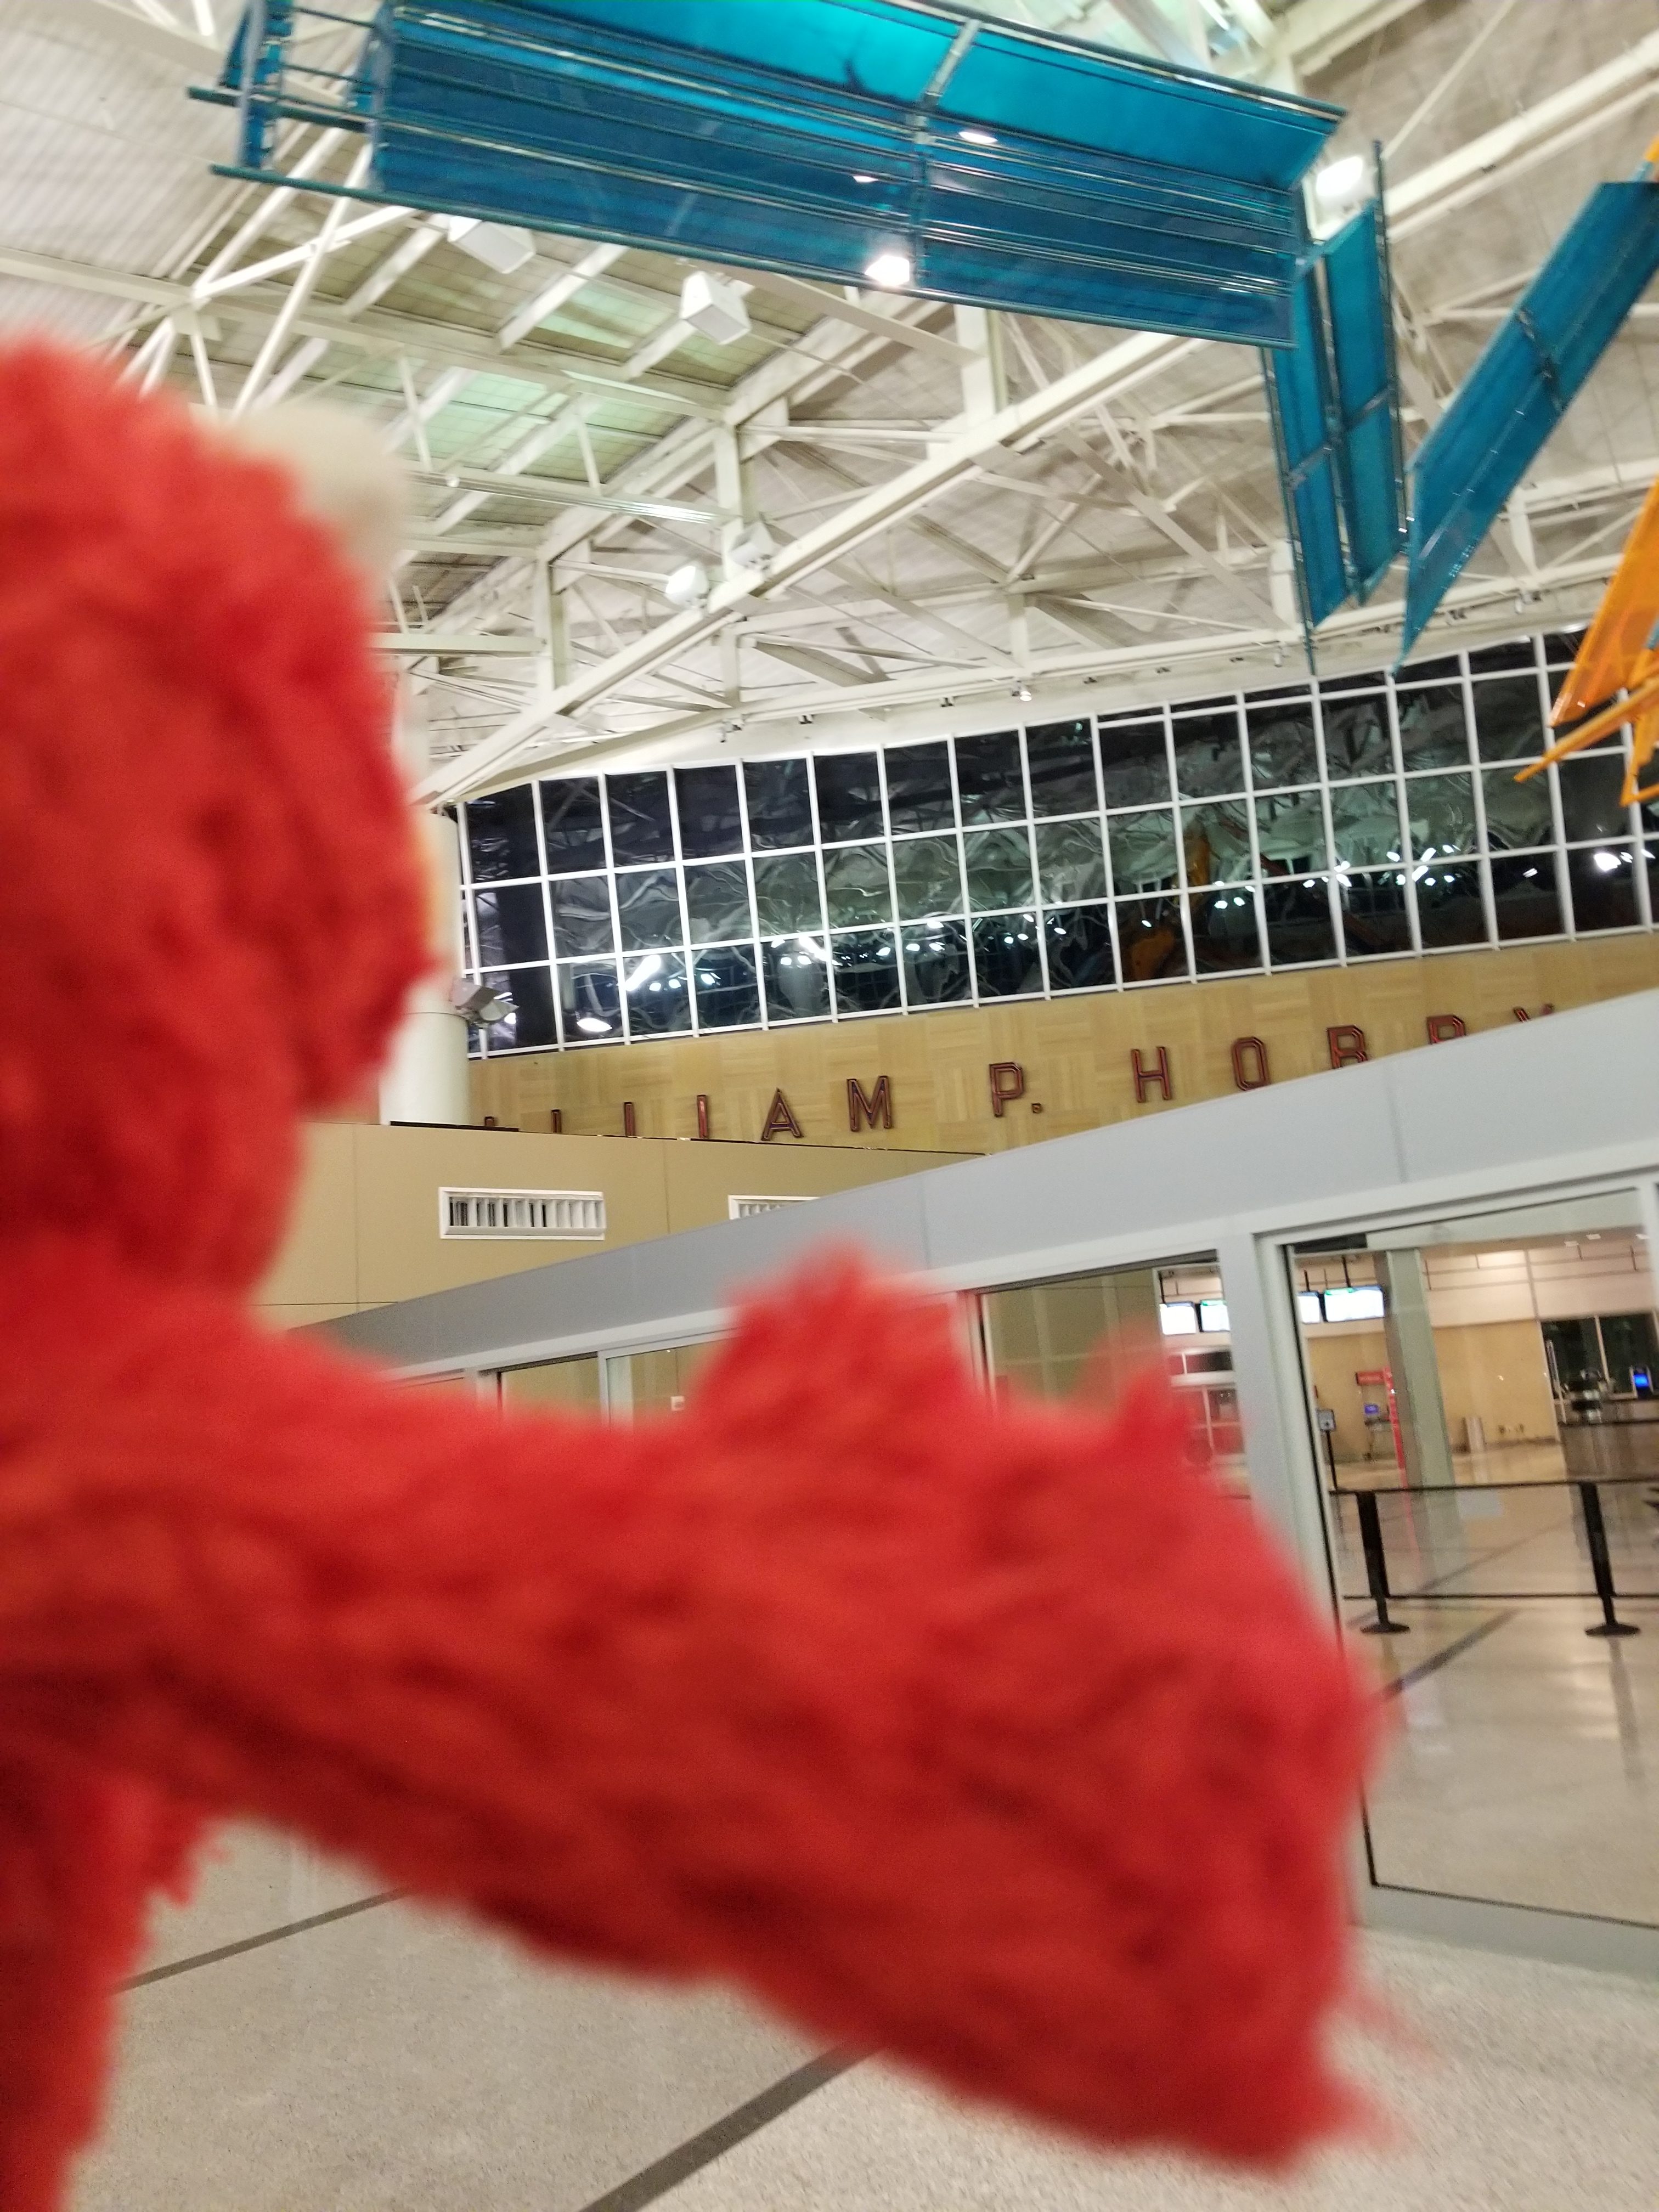 Elmo Arrives in Houston